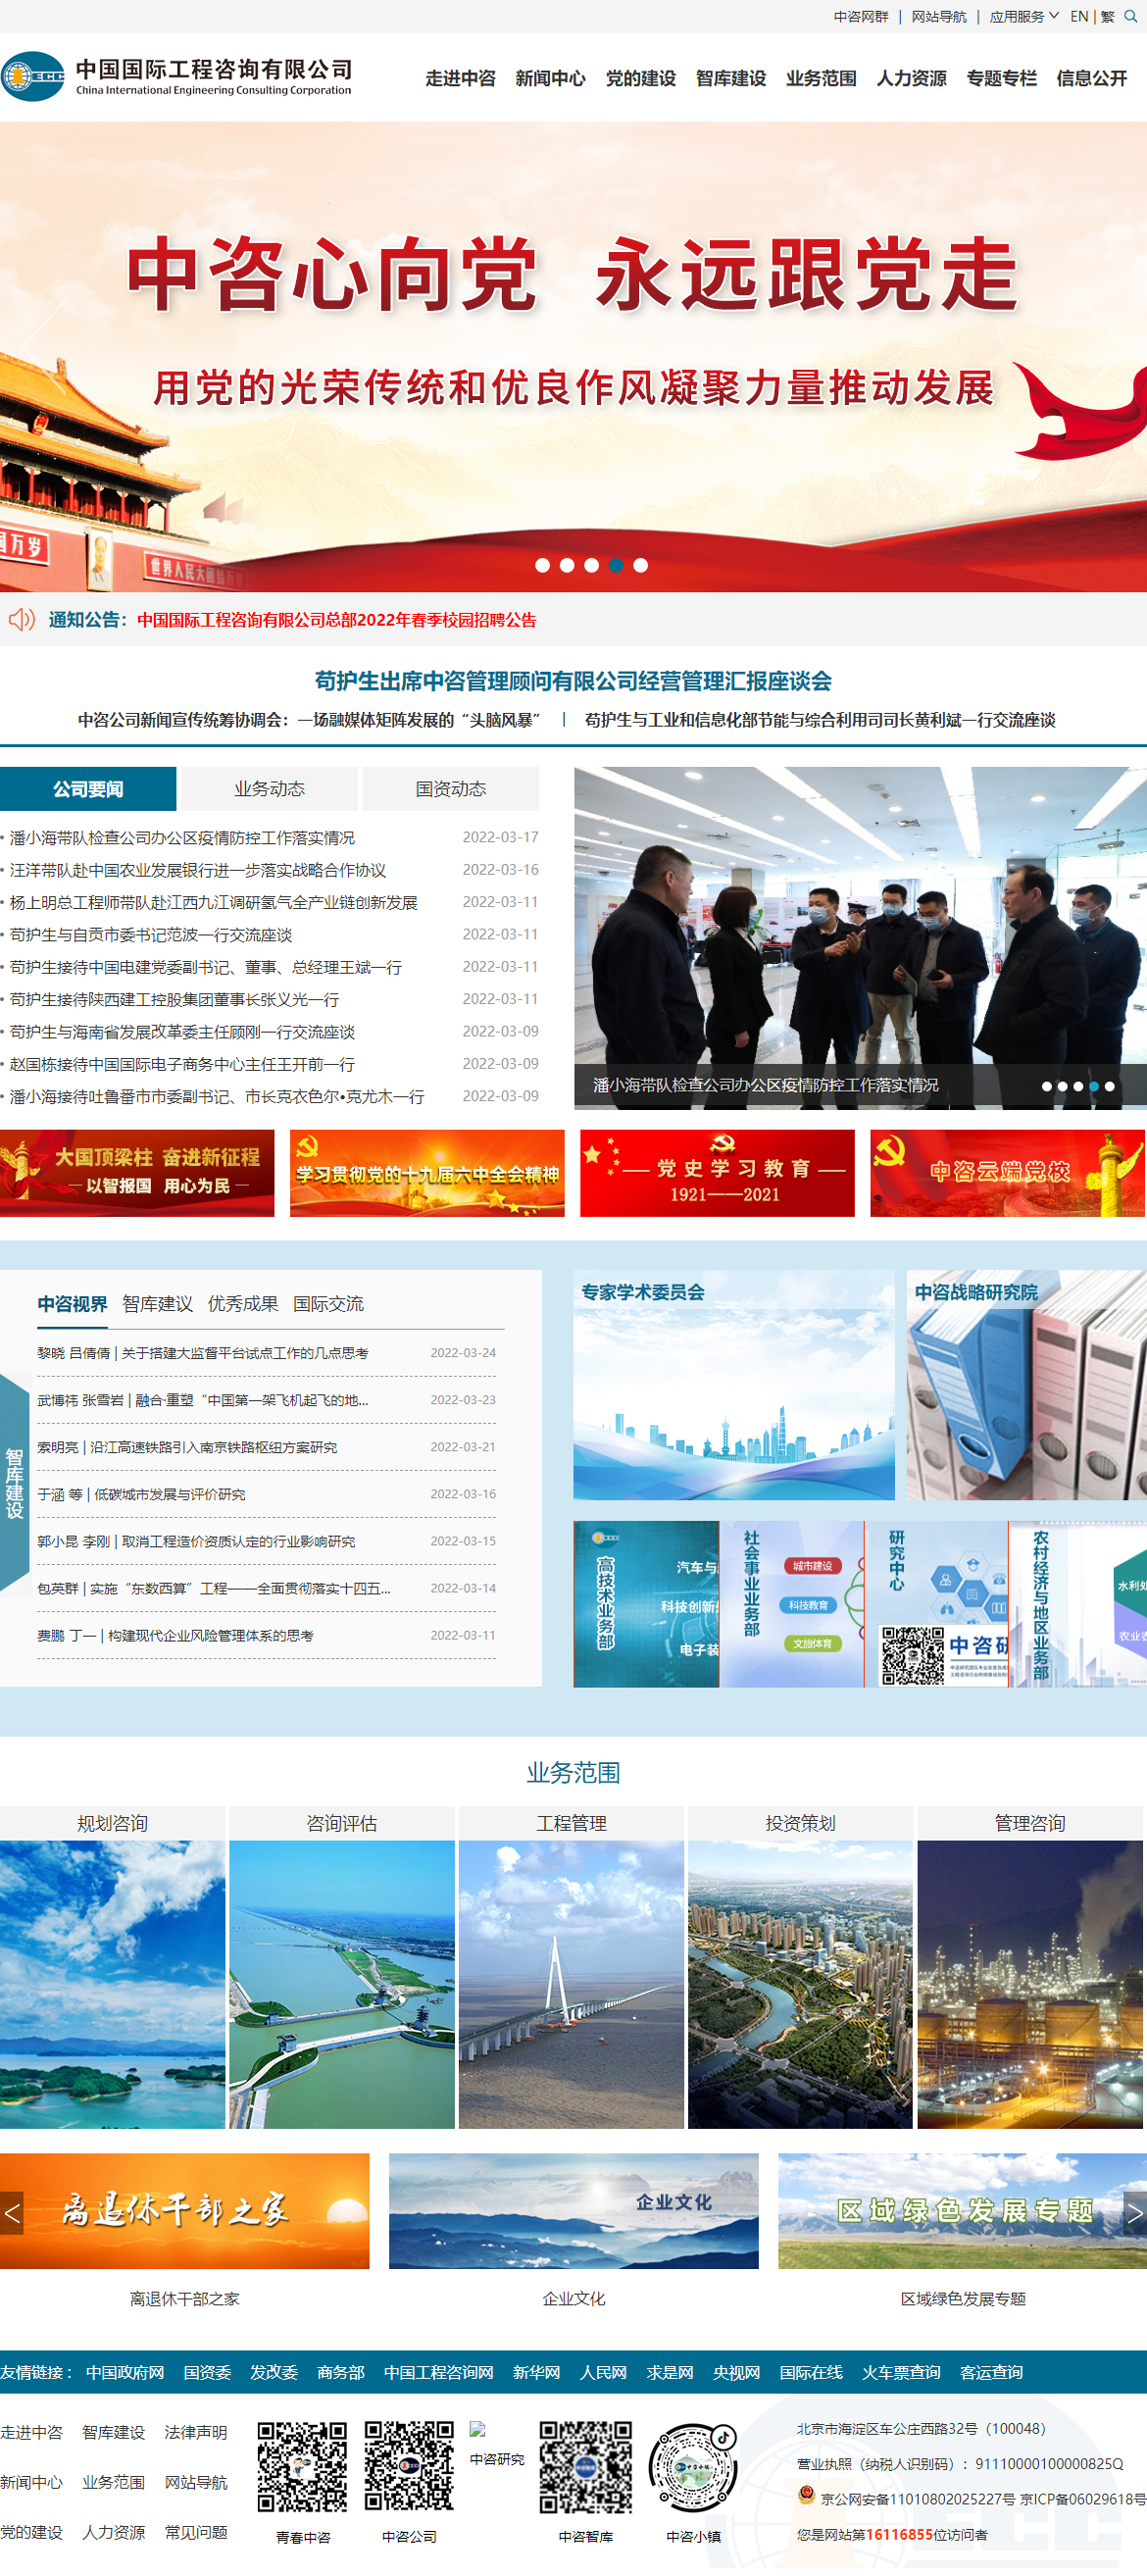 中国国际工程咨询有限公司网站案例